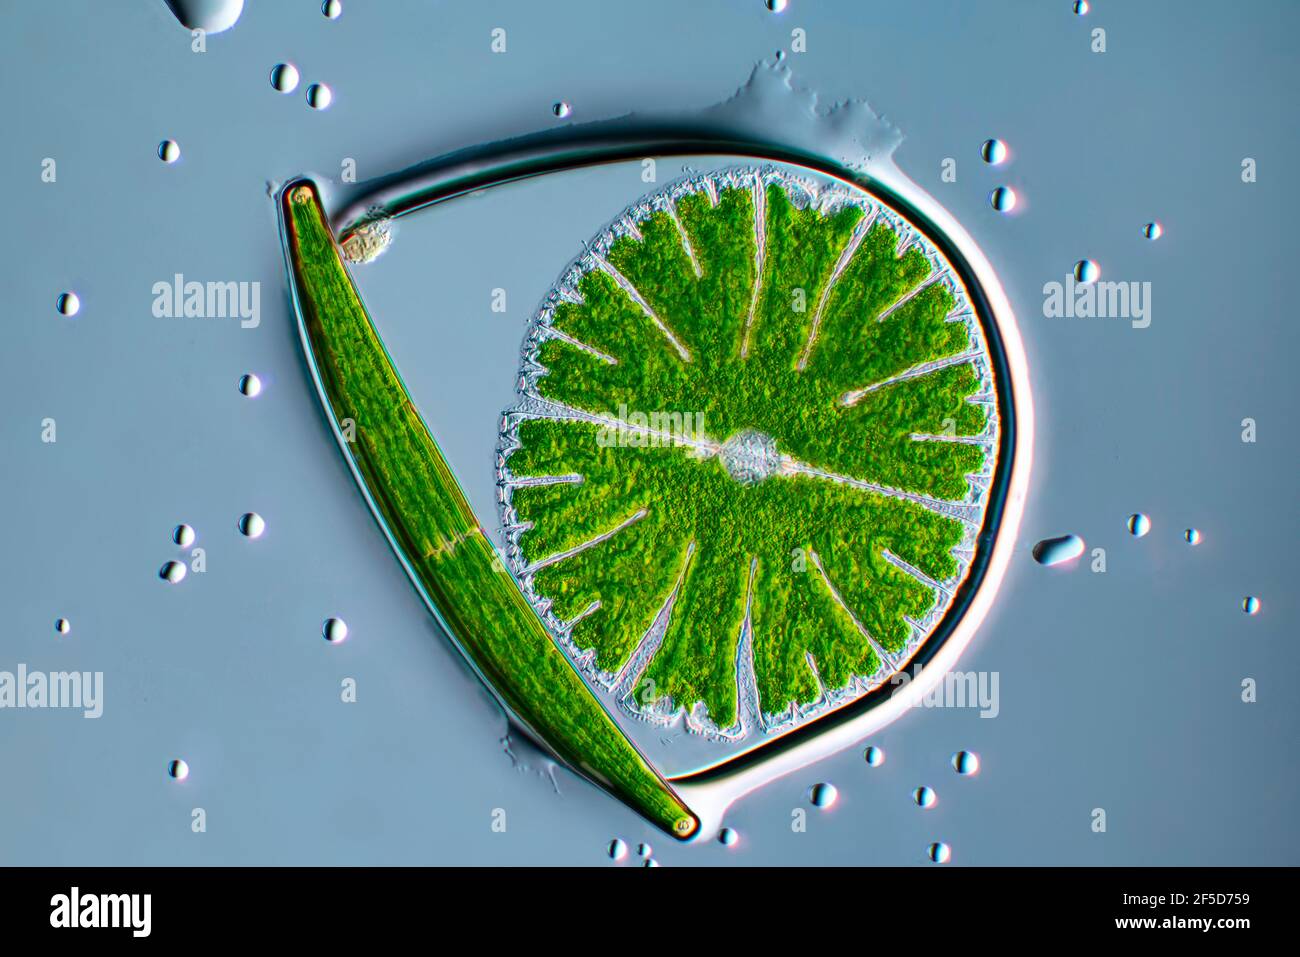 Grünalge (Micrasterias rotata), mit Clostridium in einer Wasserblase, Dunkelfeld-mikroskopisches Bild, Vergrößerung x100 bezogen auf 35 mm, Deutschland Stockfoto